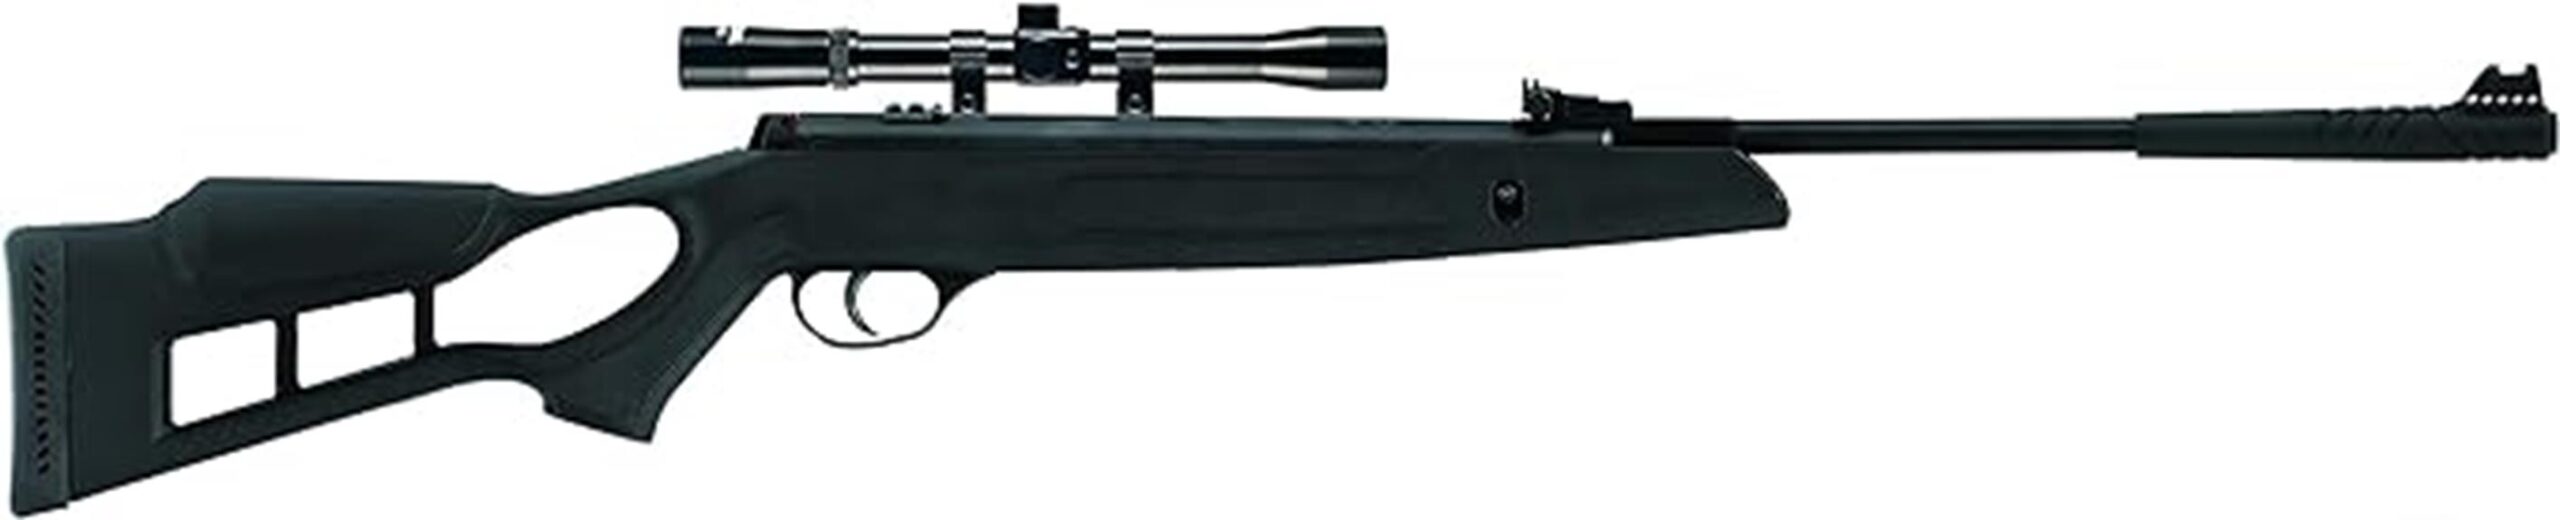 hatsan edge air rifle